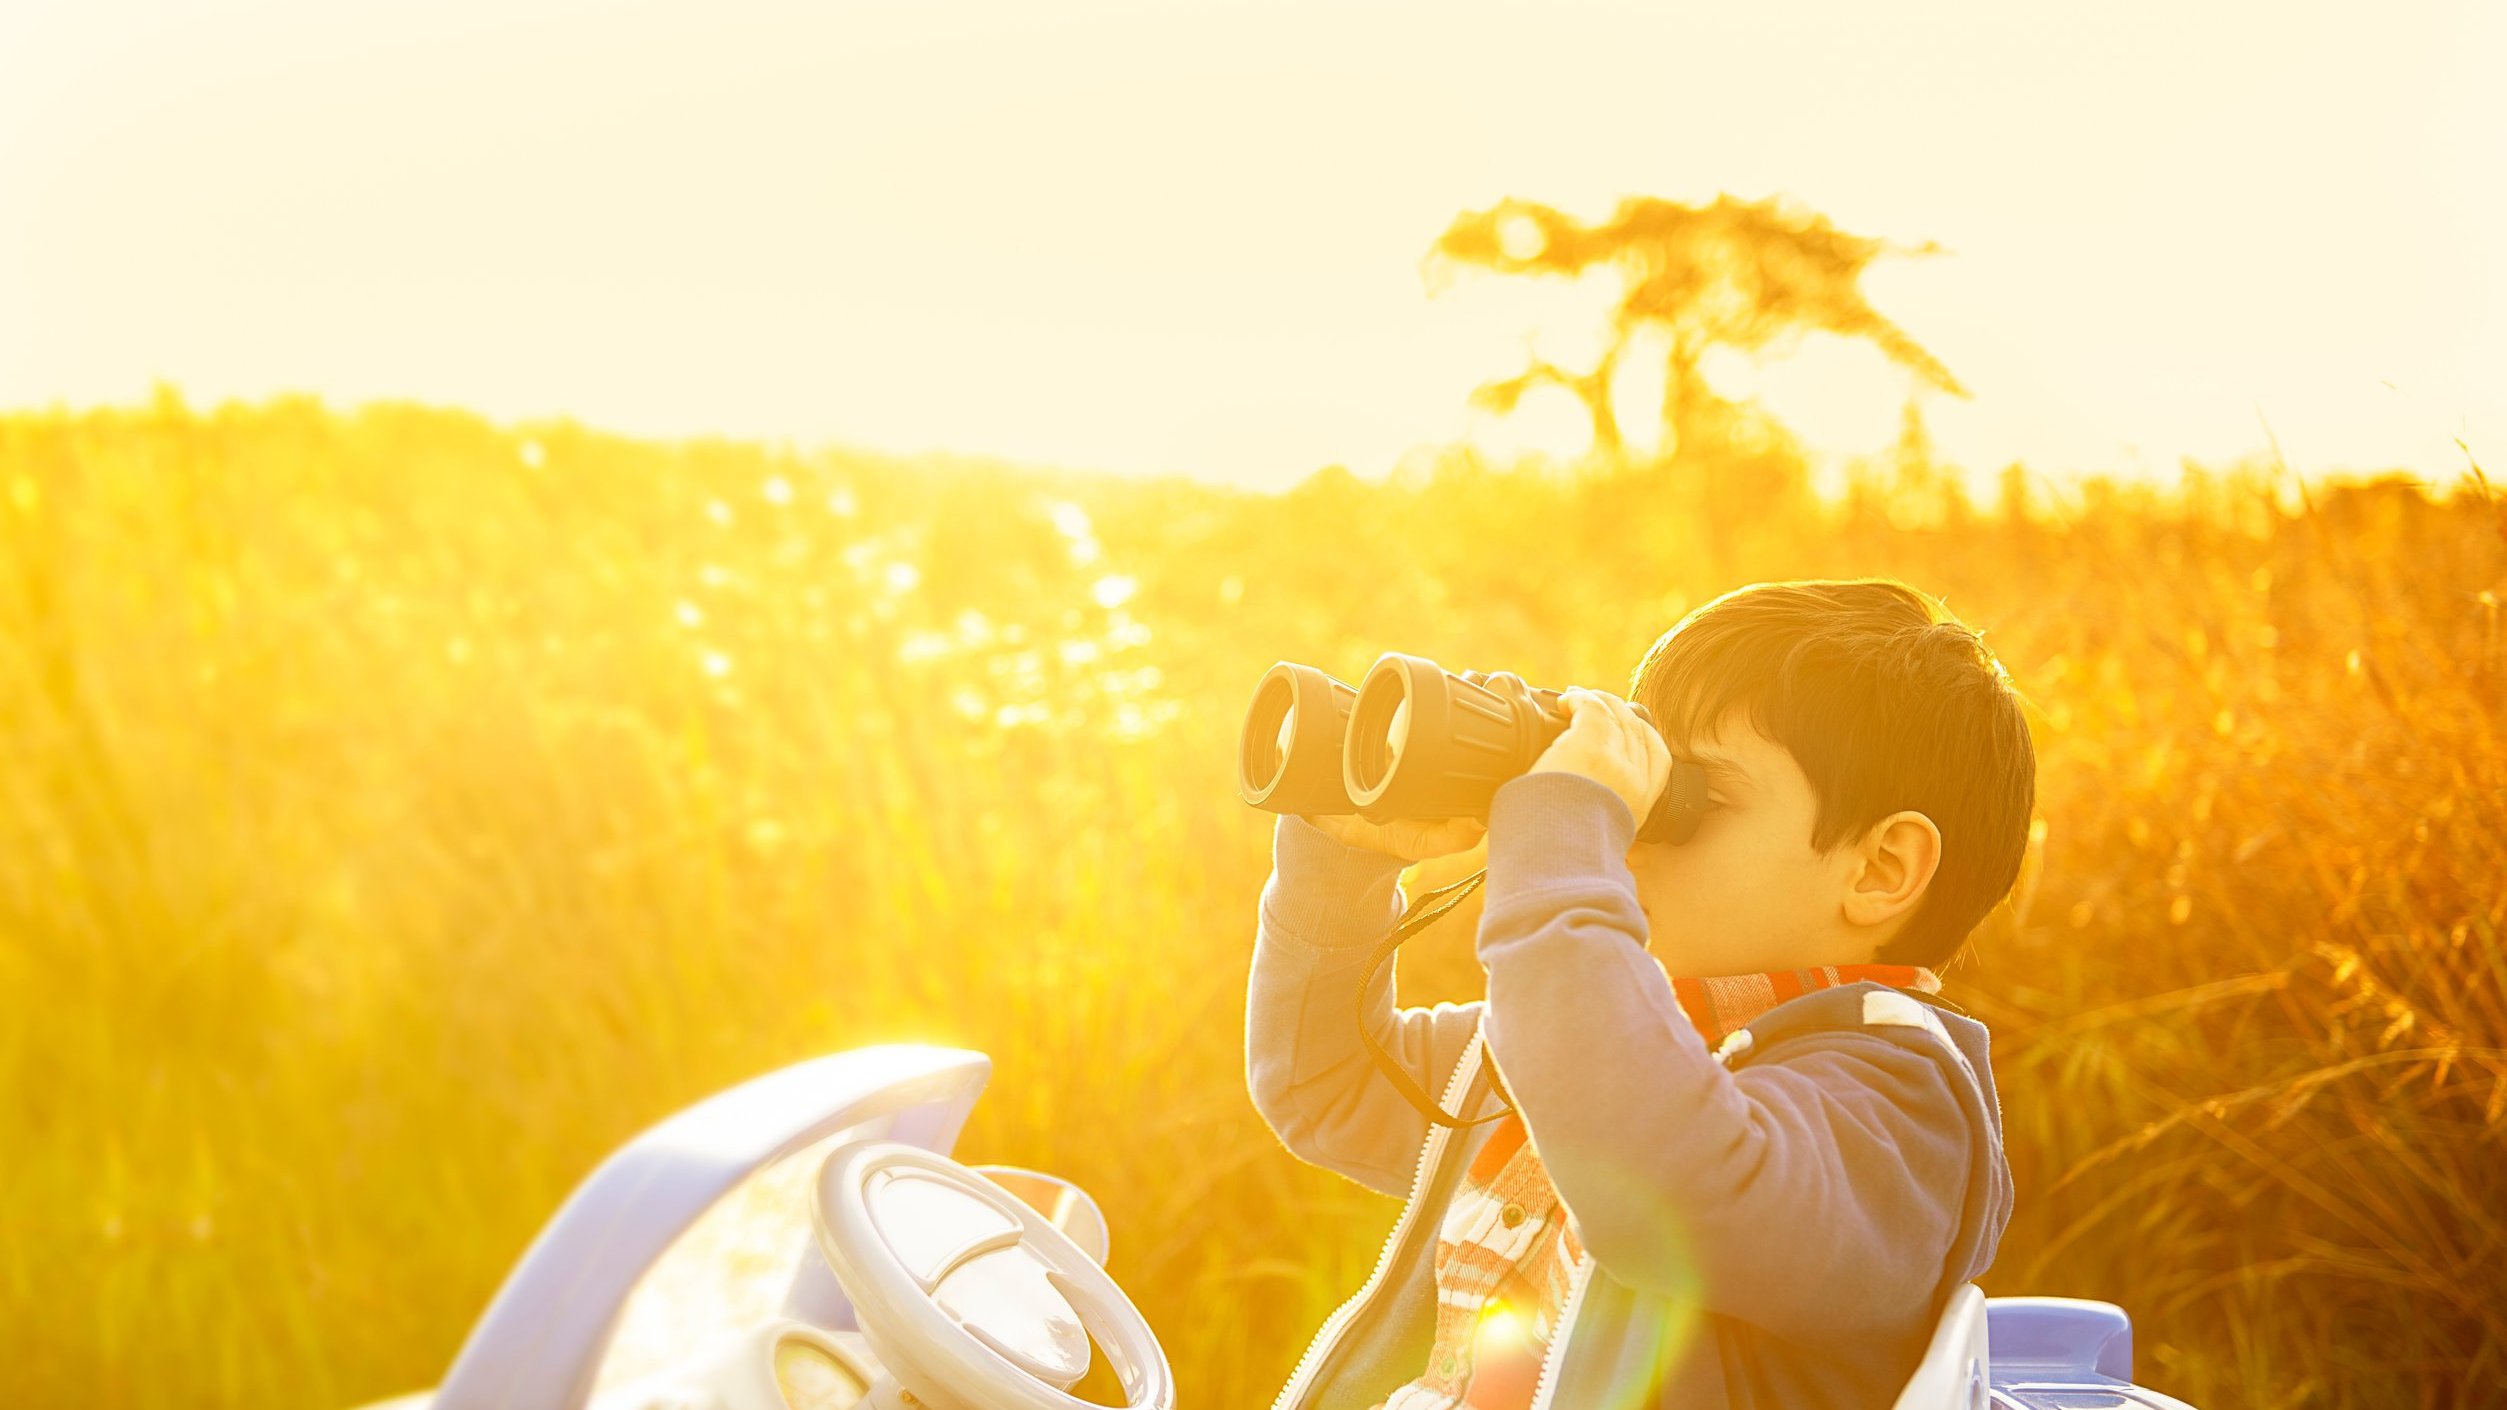 Criança olhando pelo binóculo no meio da natureza num dia ensolarado